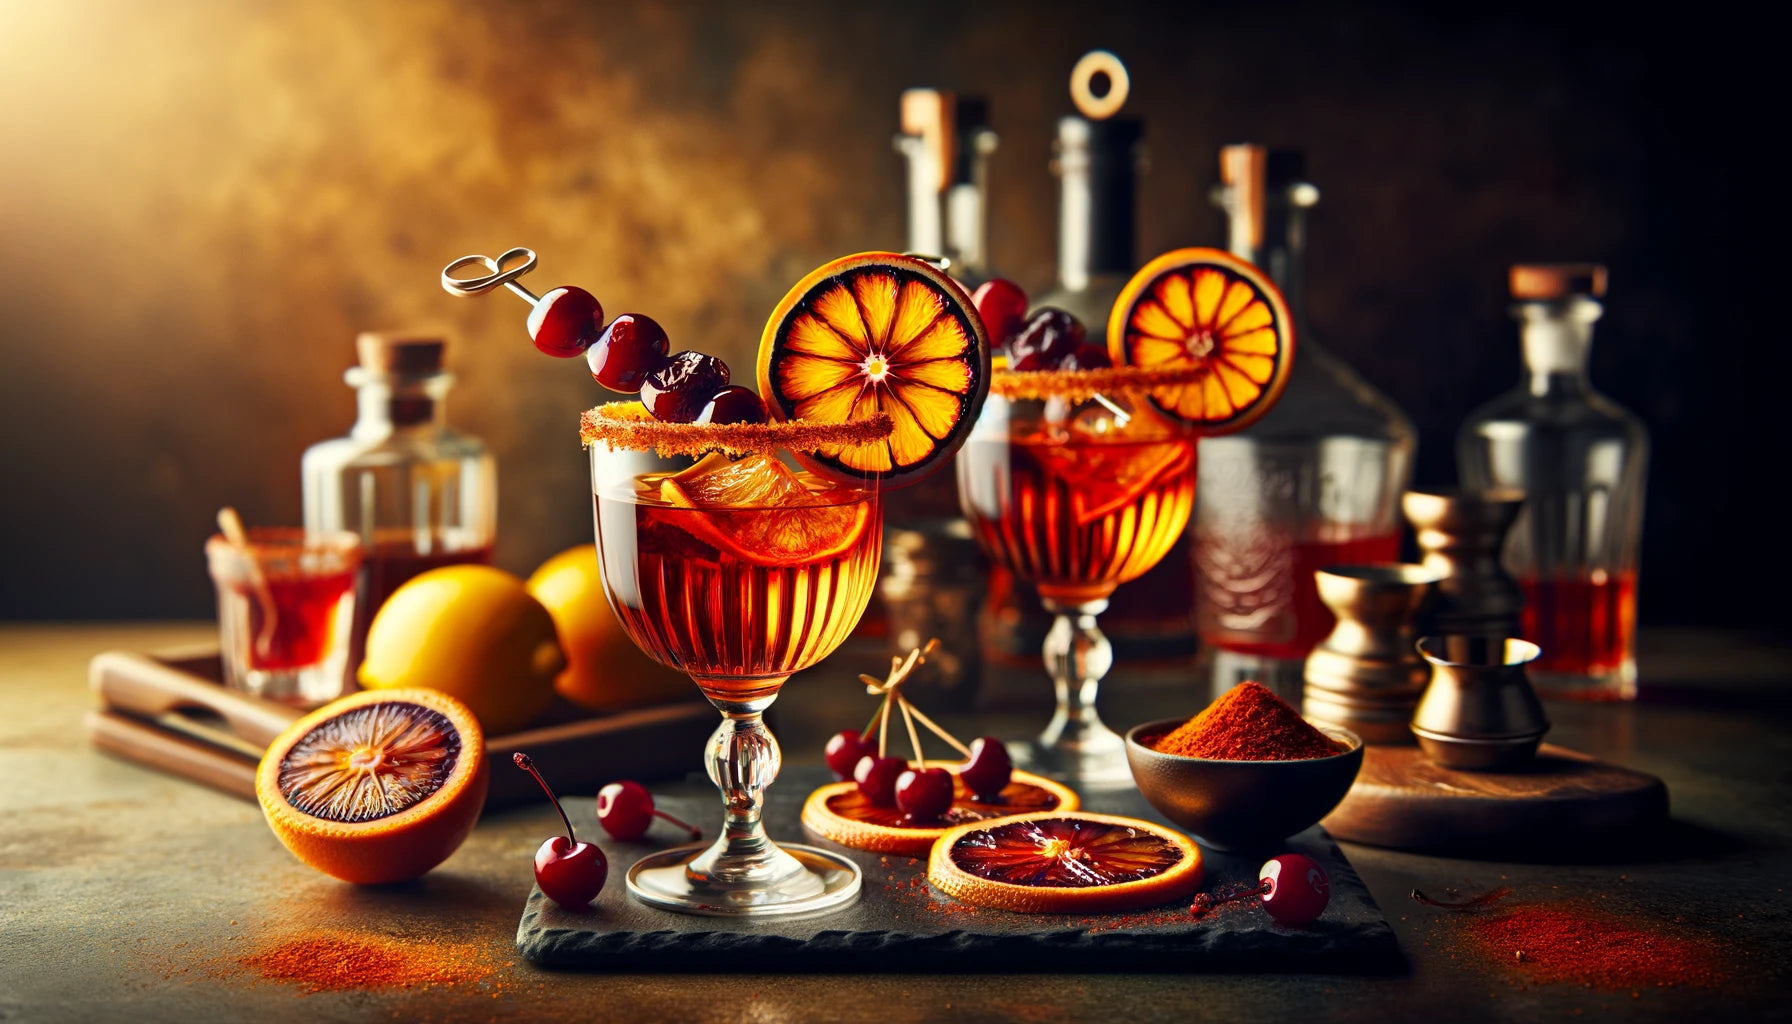 Spiked Blood Orange Amaretto Sour cocktail